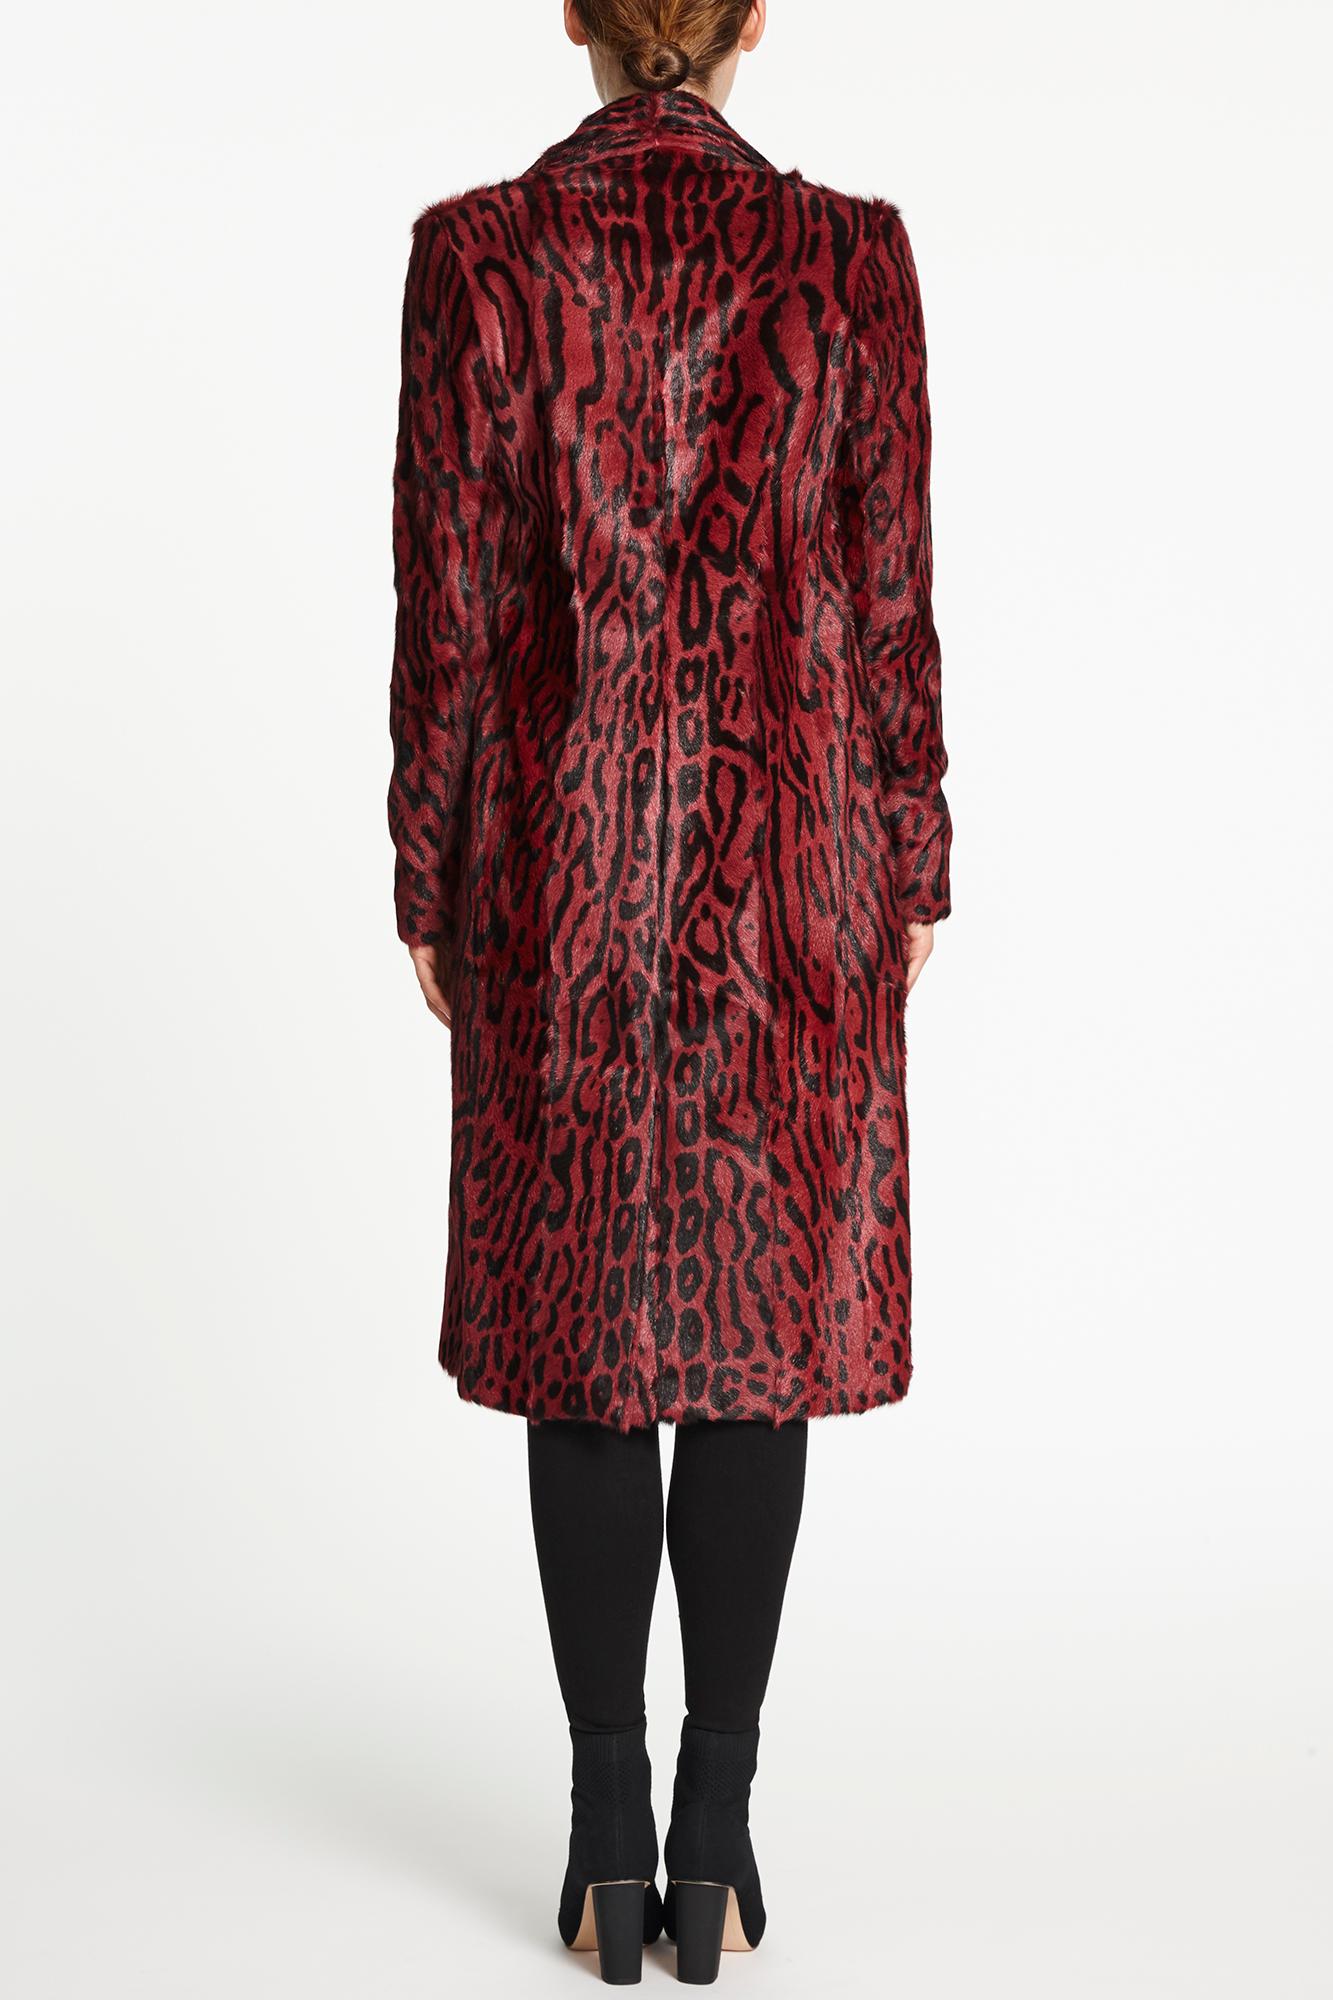 Verheyen London Longline Leopard Print Coat in Ruby Red Goat Hair Fur 2